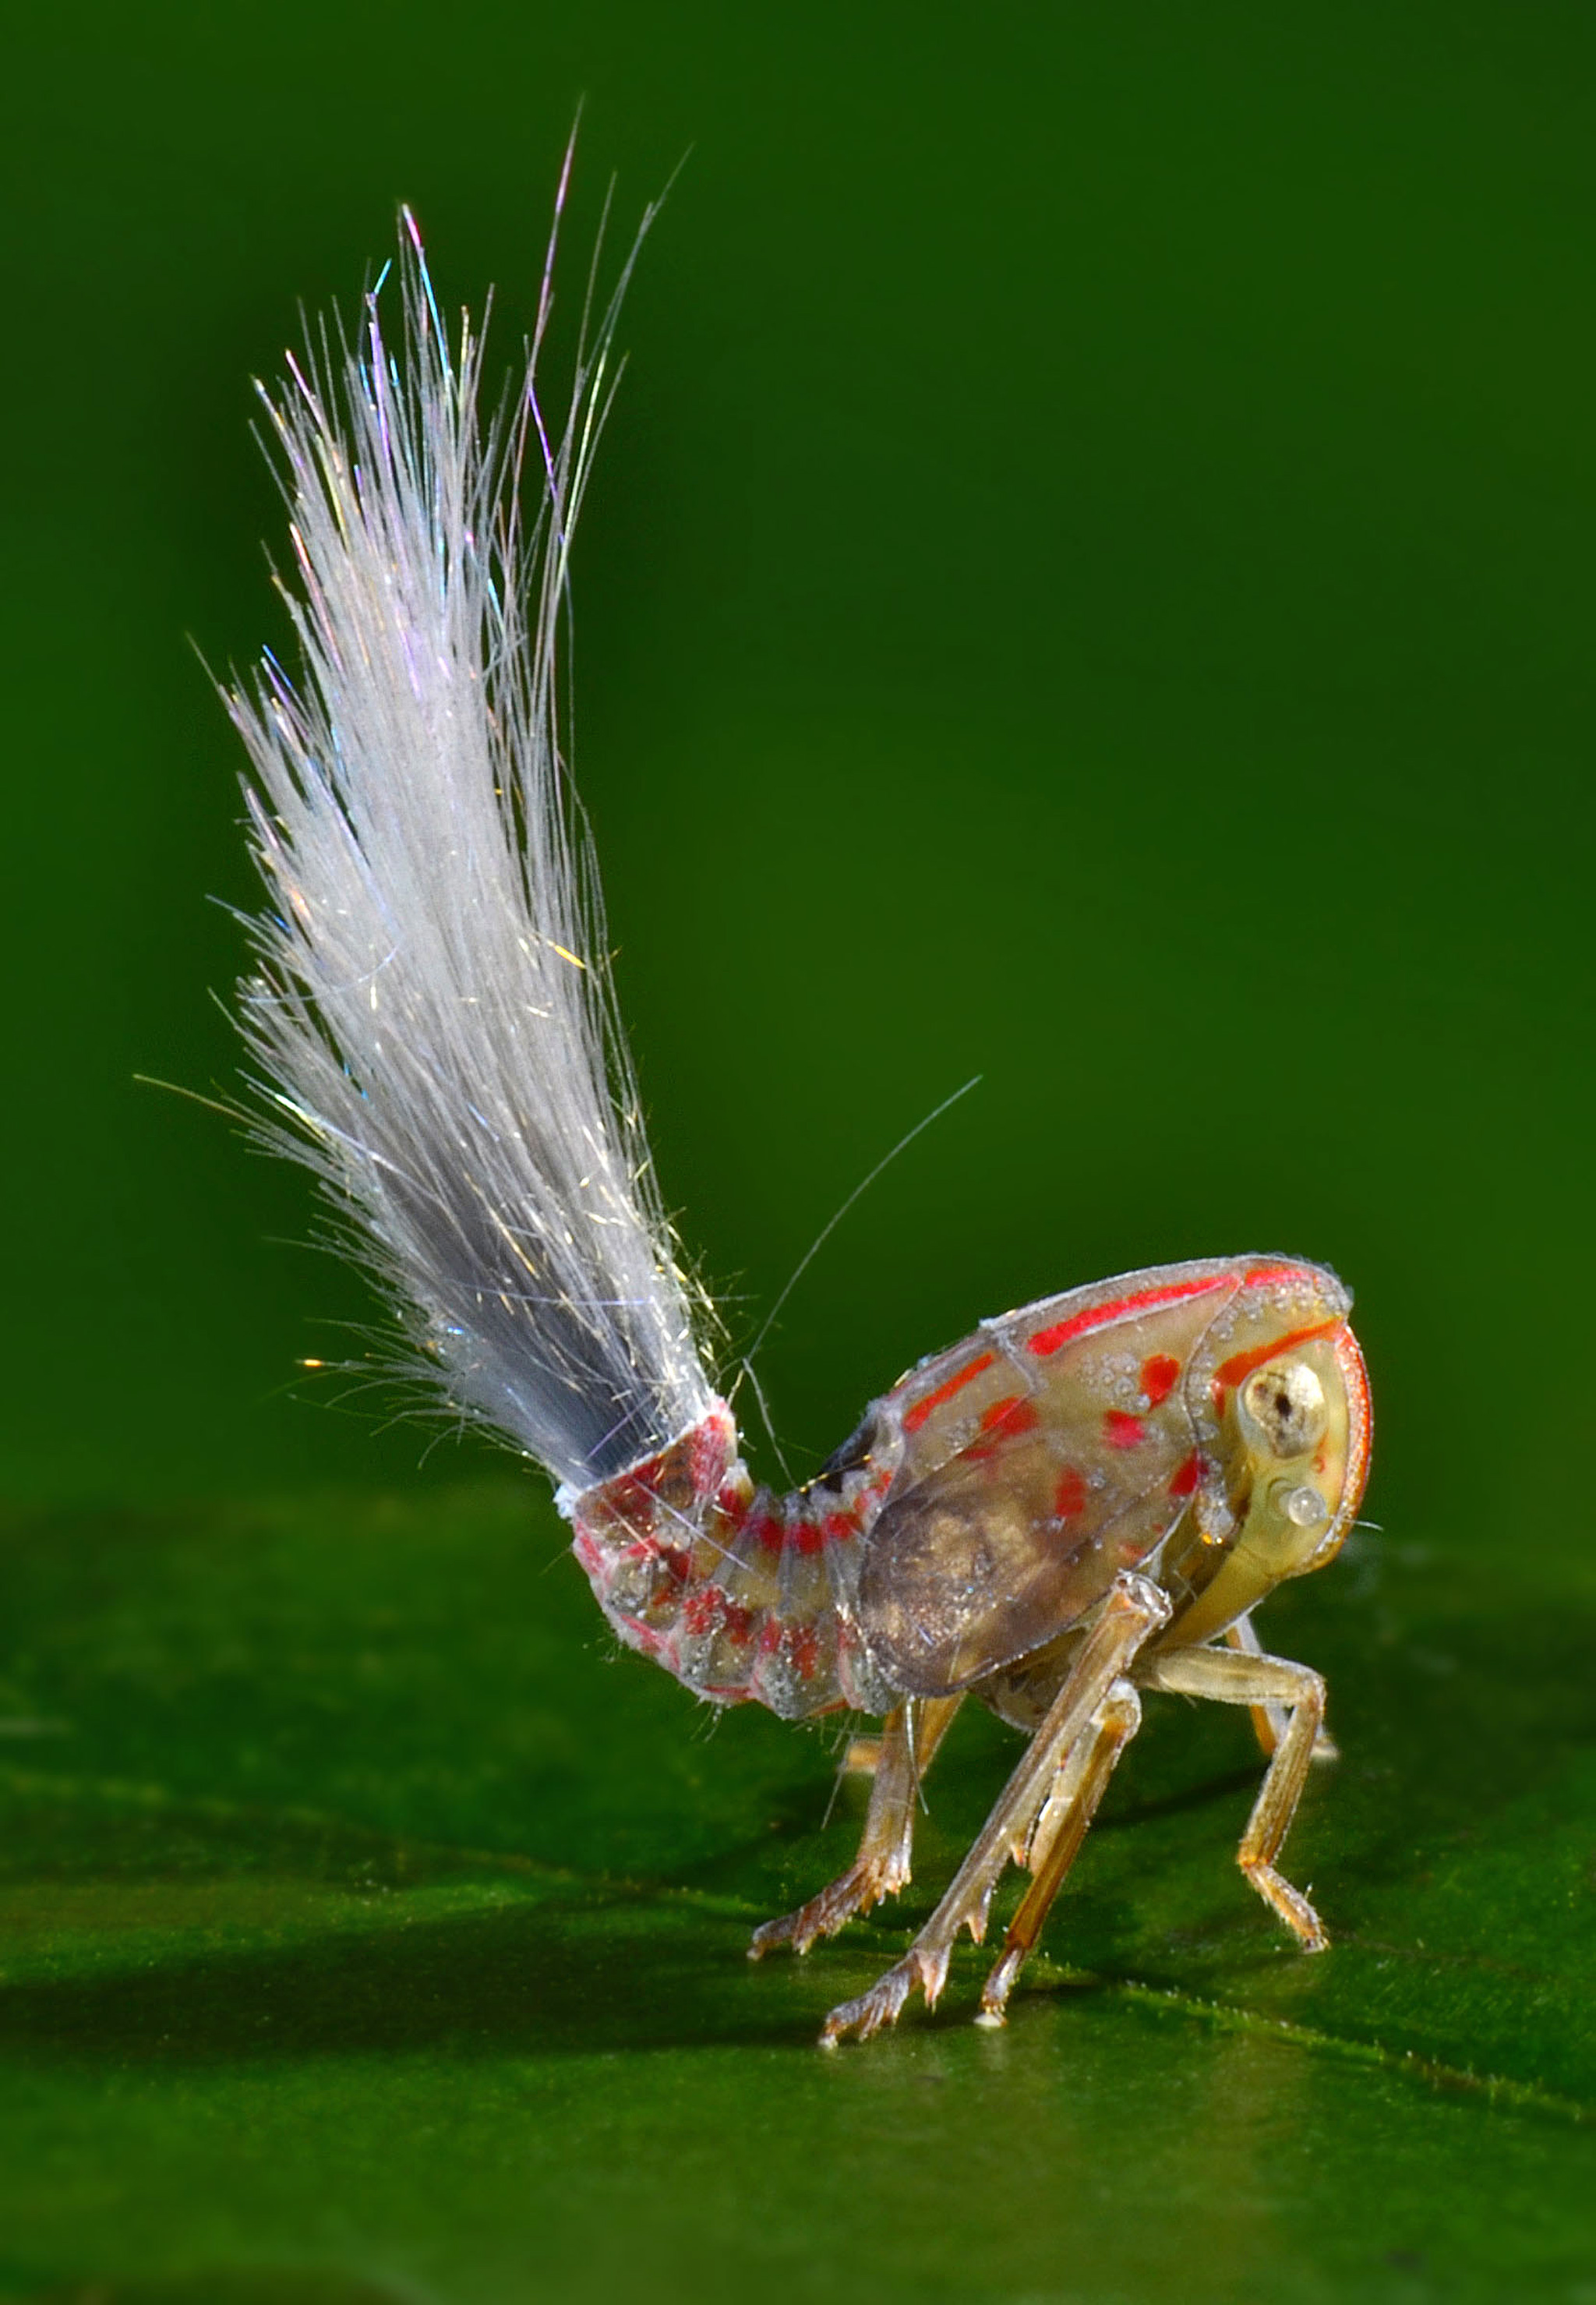 La nymphe d'une espèce de cicadelle avec son panache de sécrétion qui sort de son abdomen. © Trond Larsen